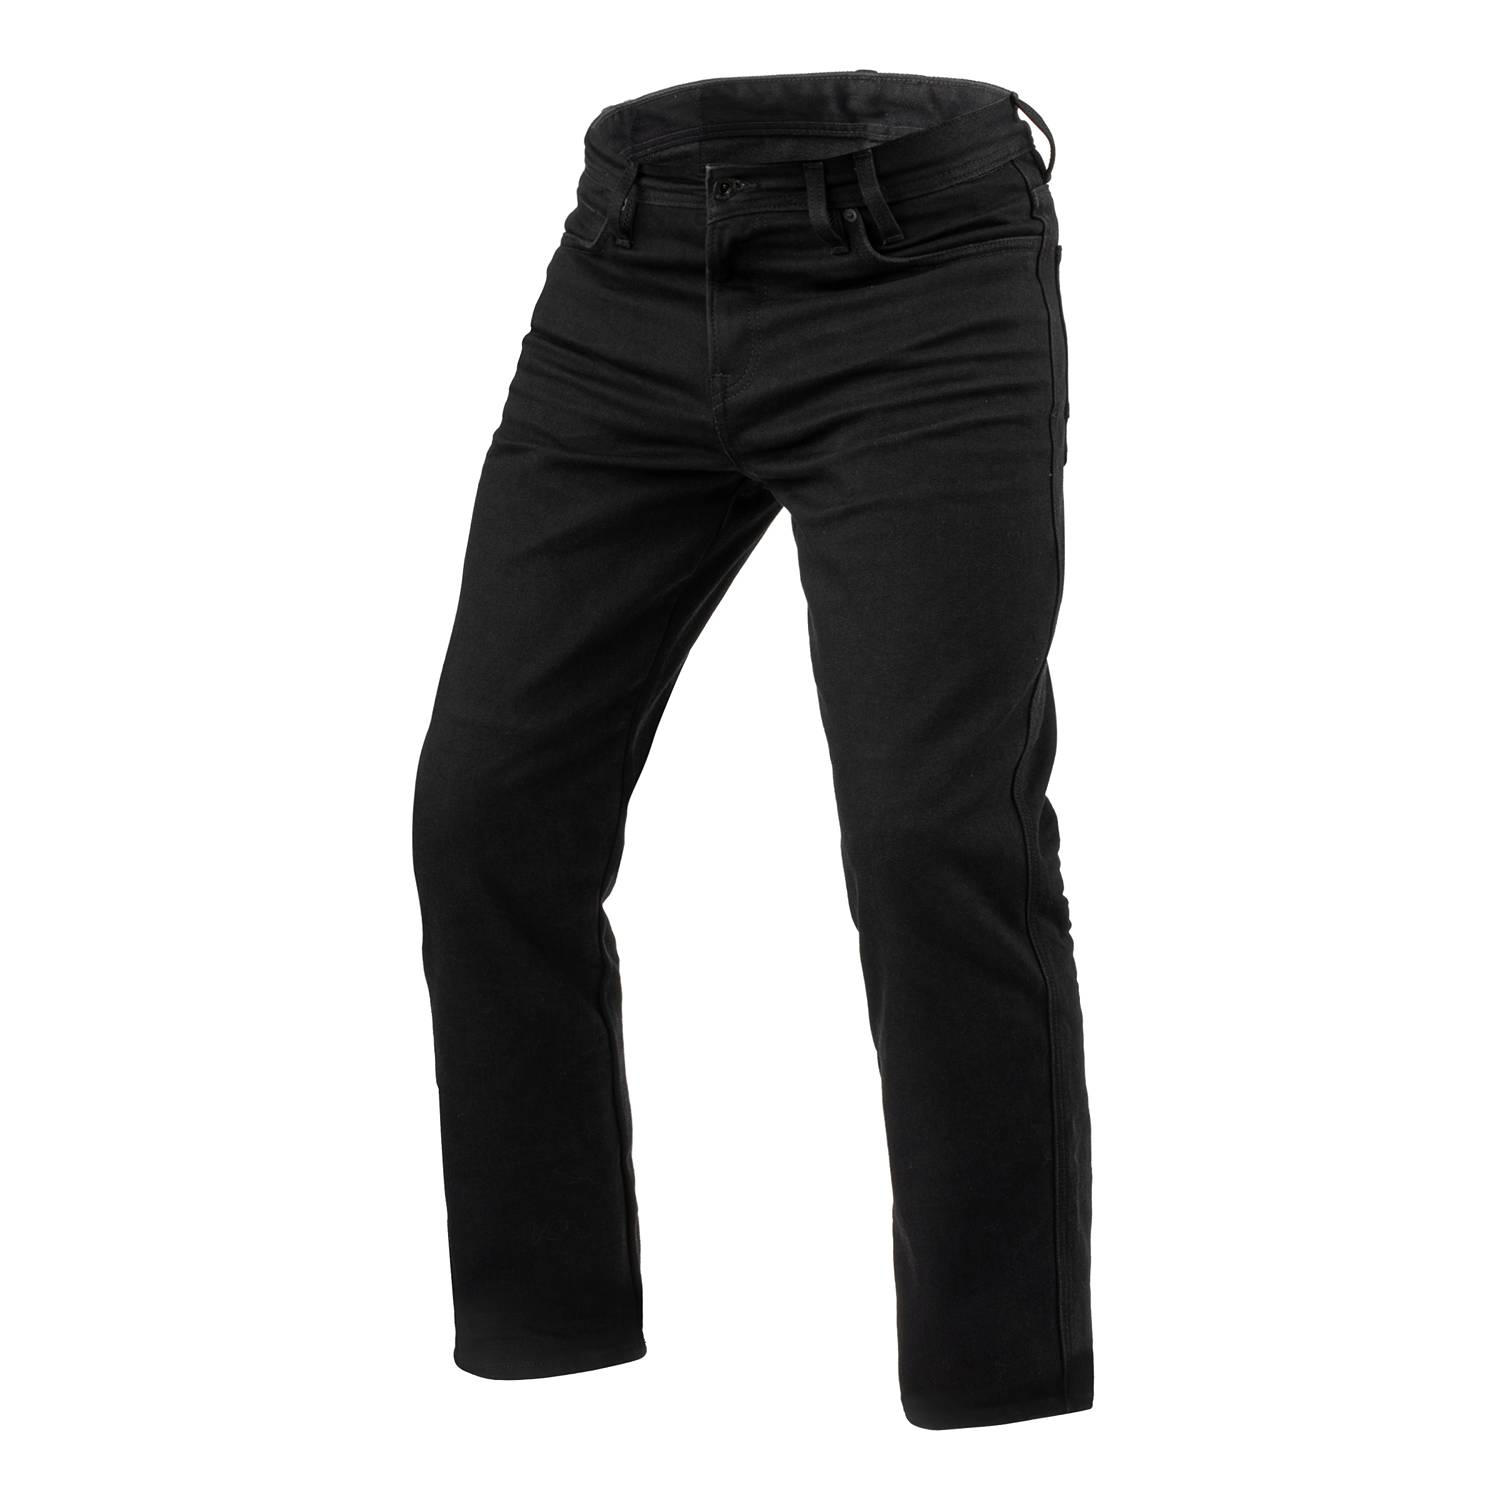 Image of REV'IT! Jeans Lombard 3 RF Black L34 Motorcycle Jeans Size L34/W31 EN